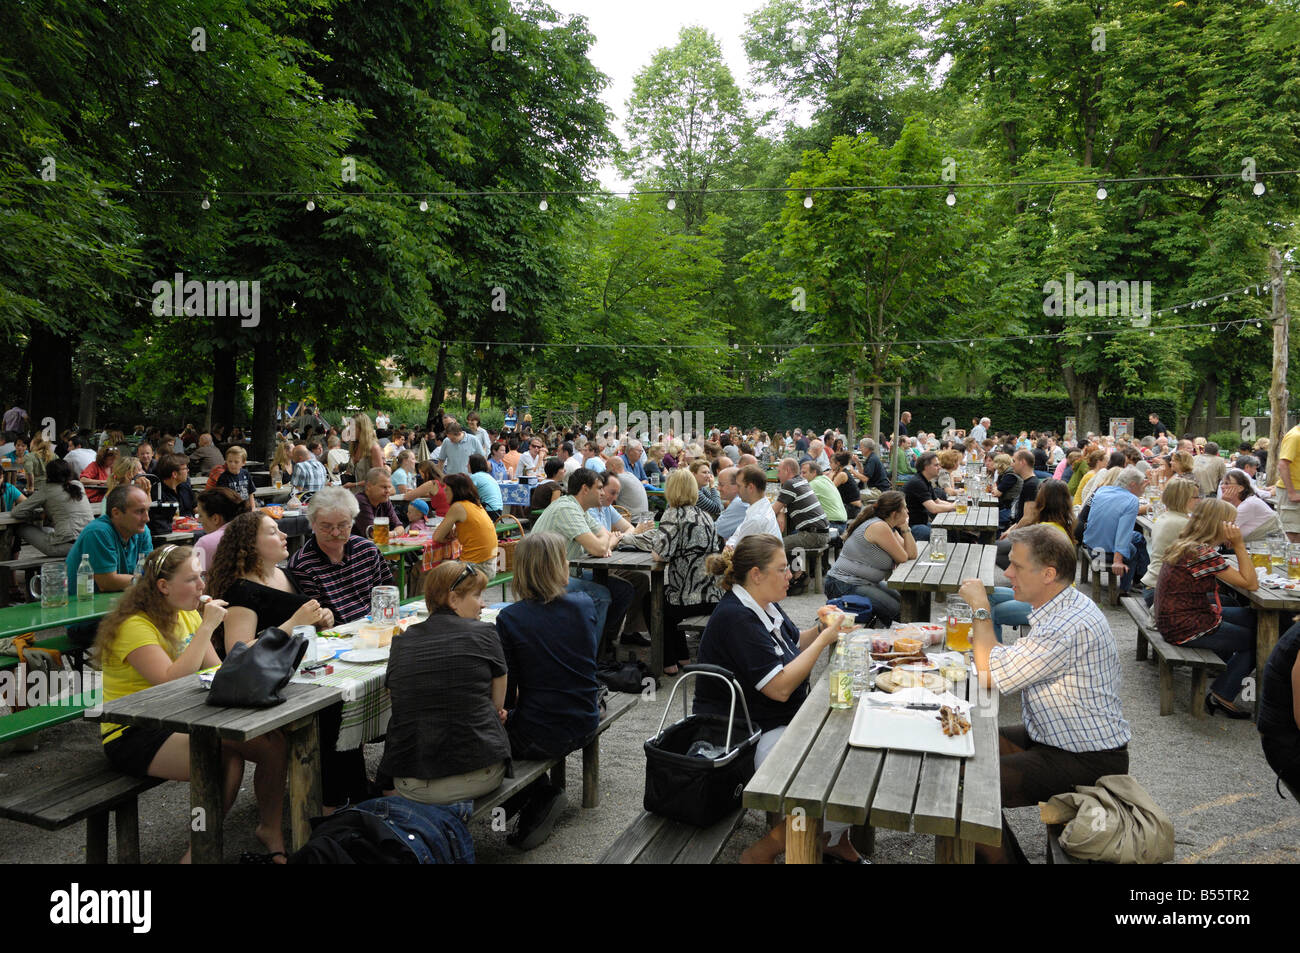 Taxisgarten, Munich beer garden, Bavaria, Germany Stock Photo